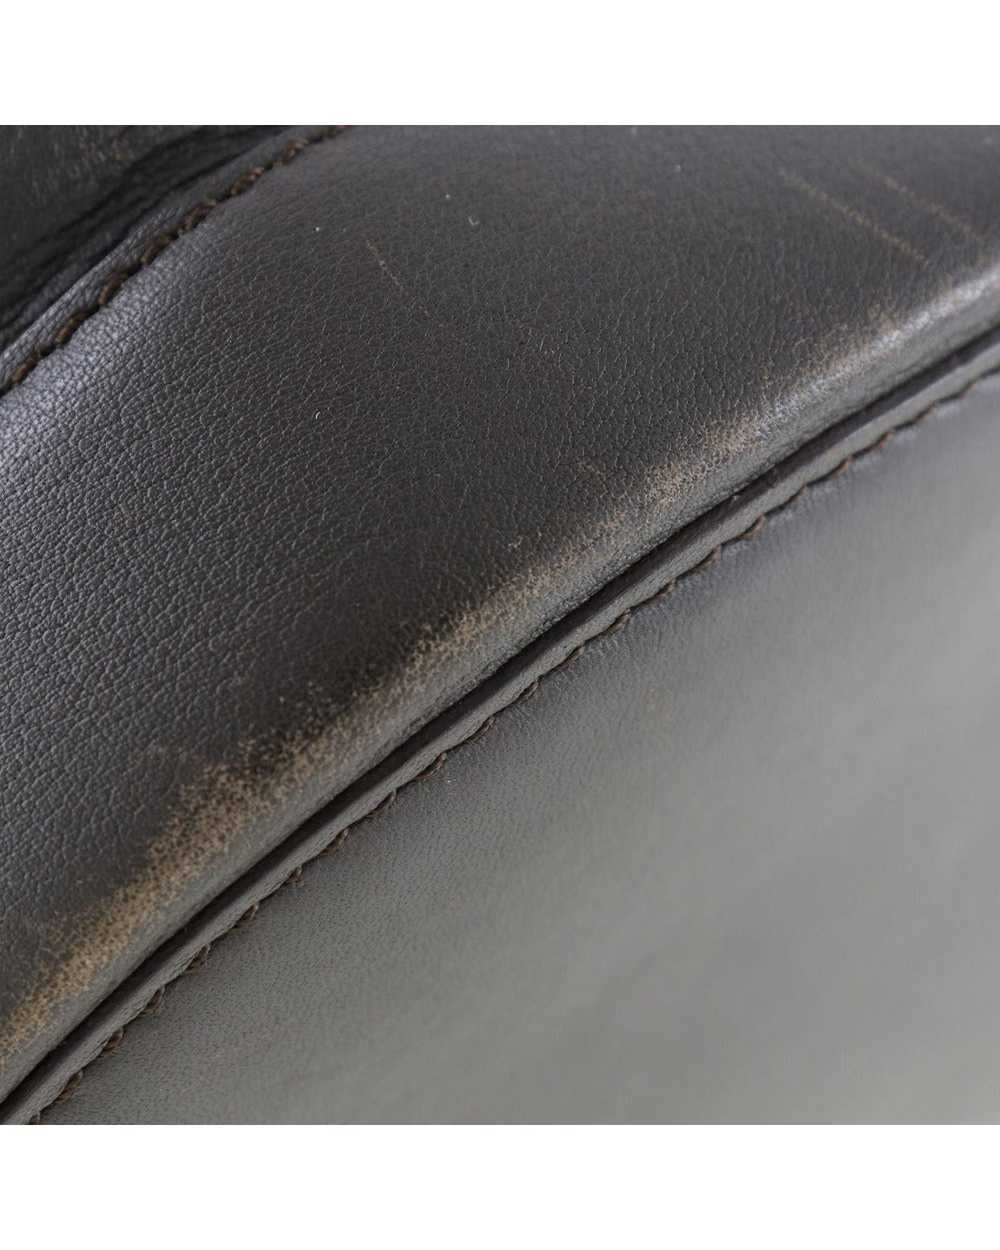 Loewe Brown Leather One-Shoulder Bag - image 4